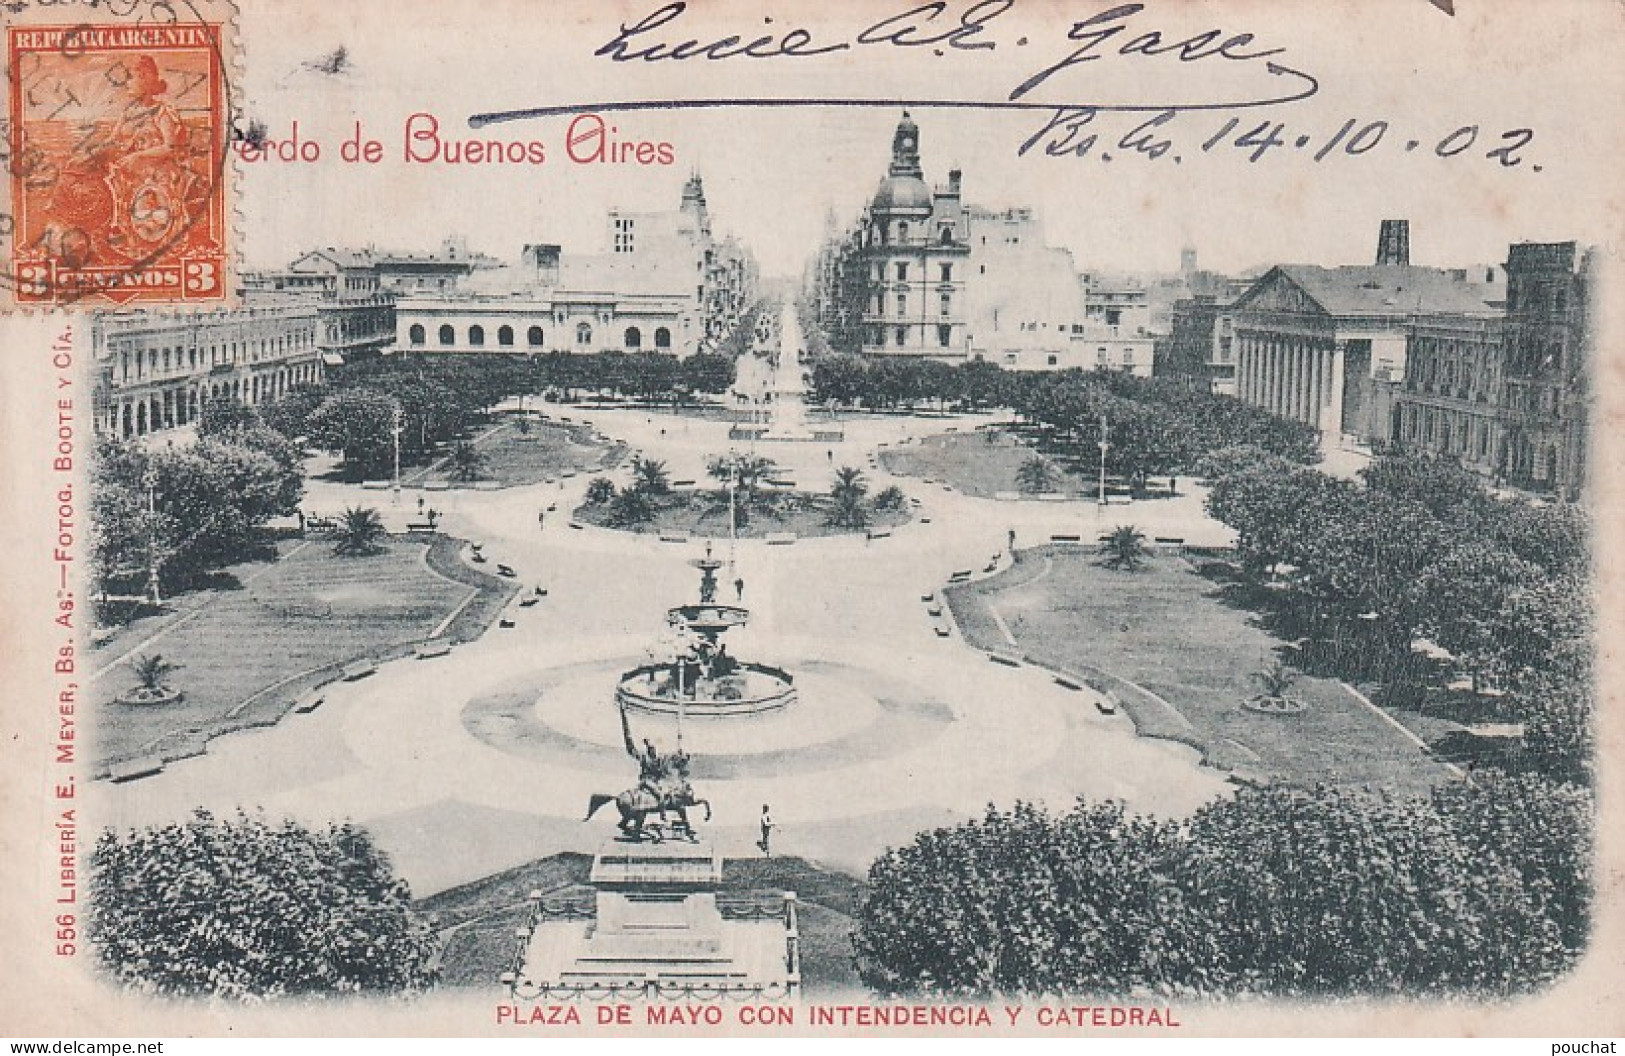 DE Nw28- PLAZA DE MAYO CON INTENDENCIA Y CATEDRAL - RECUERDO DE BUENOS AIRES - ARGENTINA - OBLITERATION 1902 - Argentina